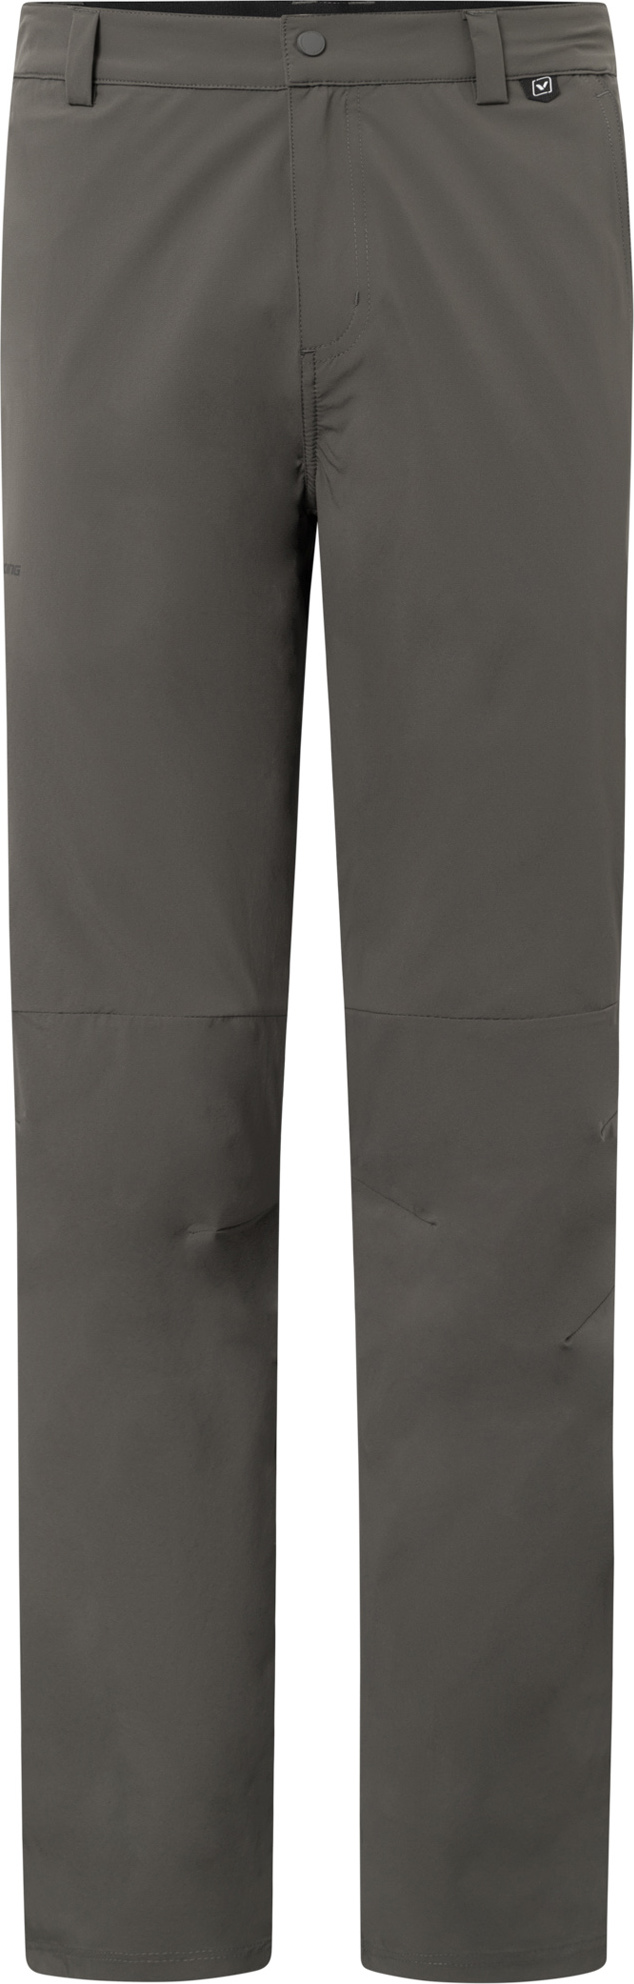 Pánské outdoorové kalhoty VIKING Expander Ultralight šedá Velikost: L